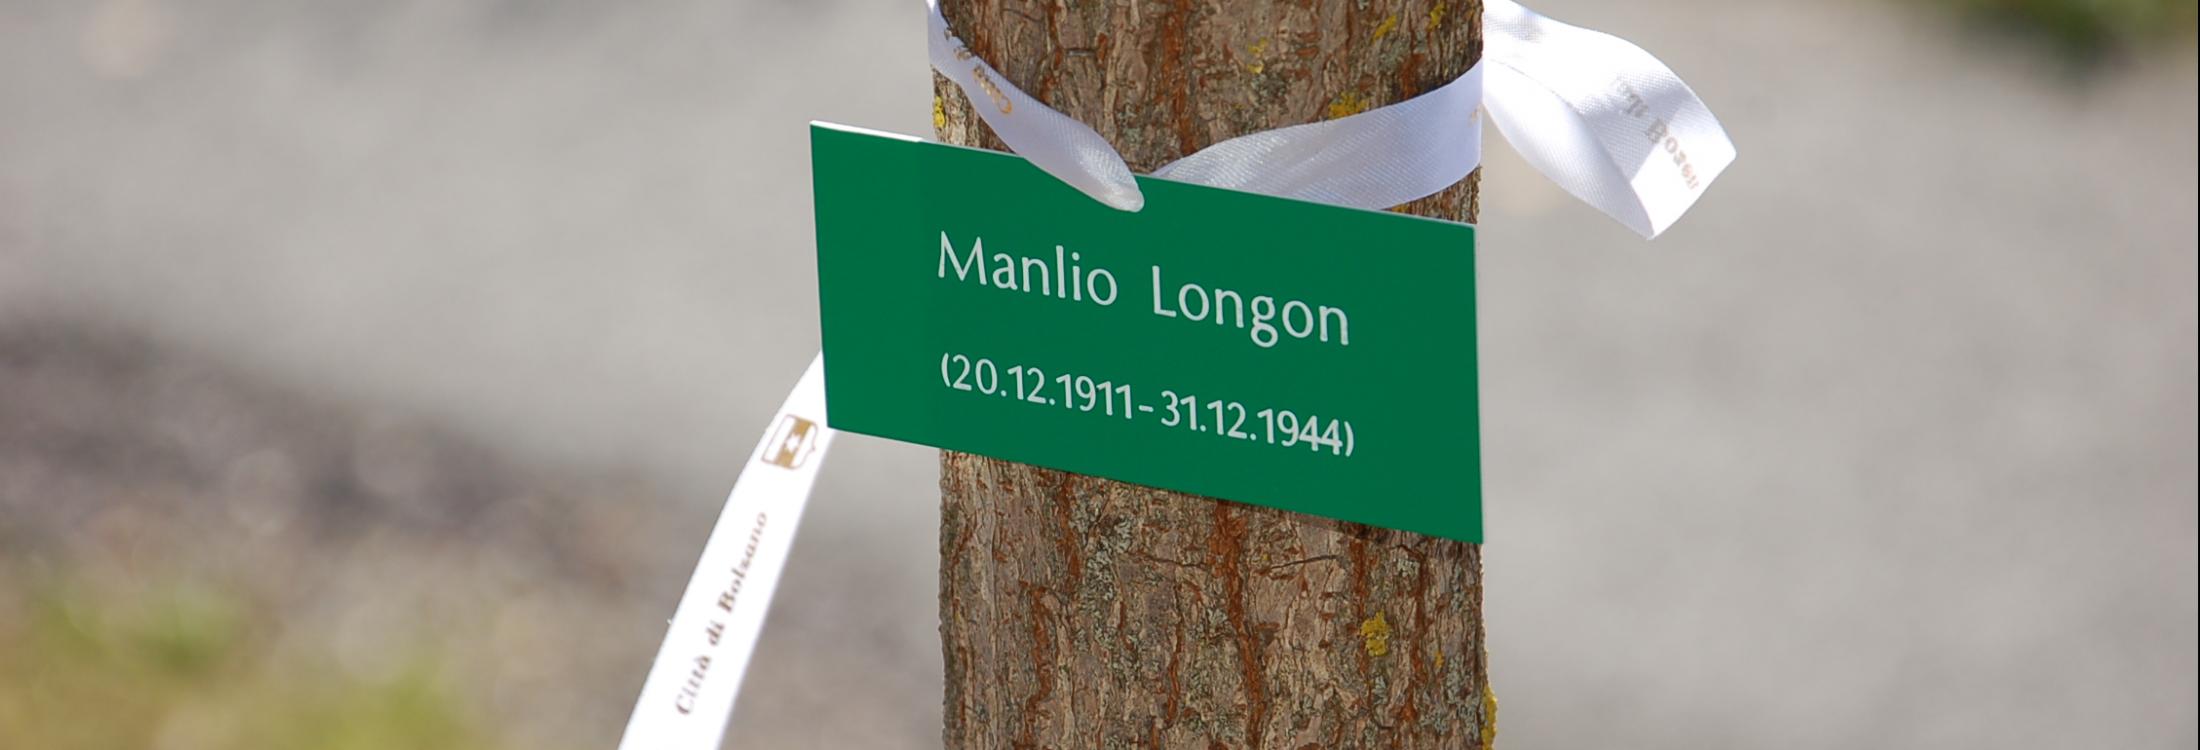 Manlio Longon